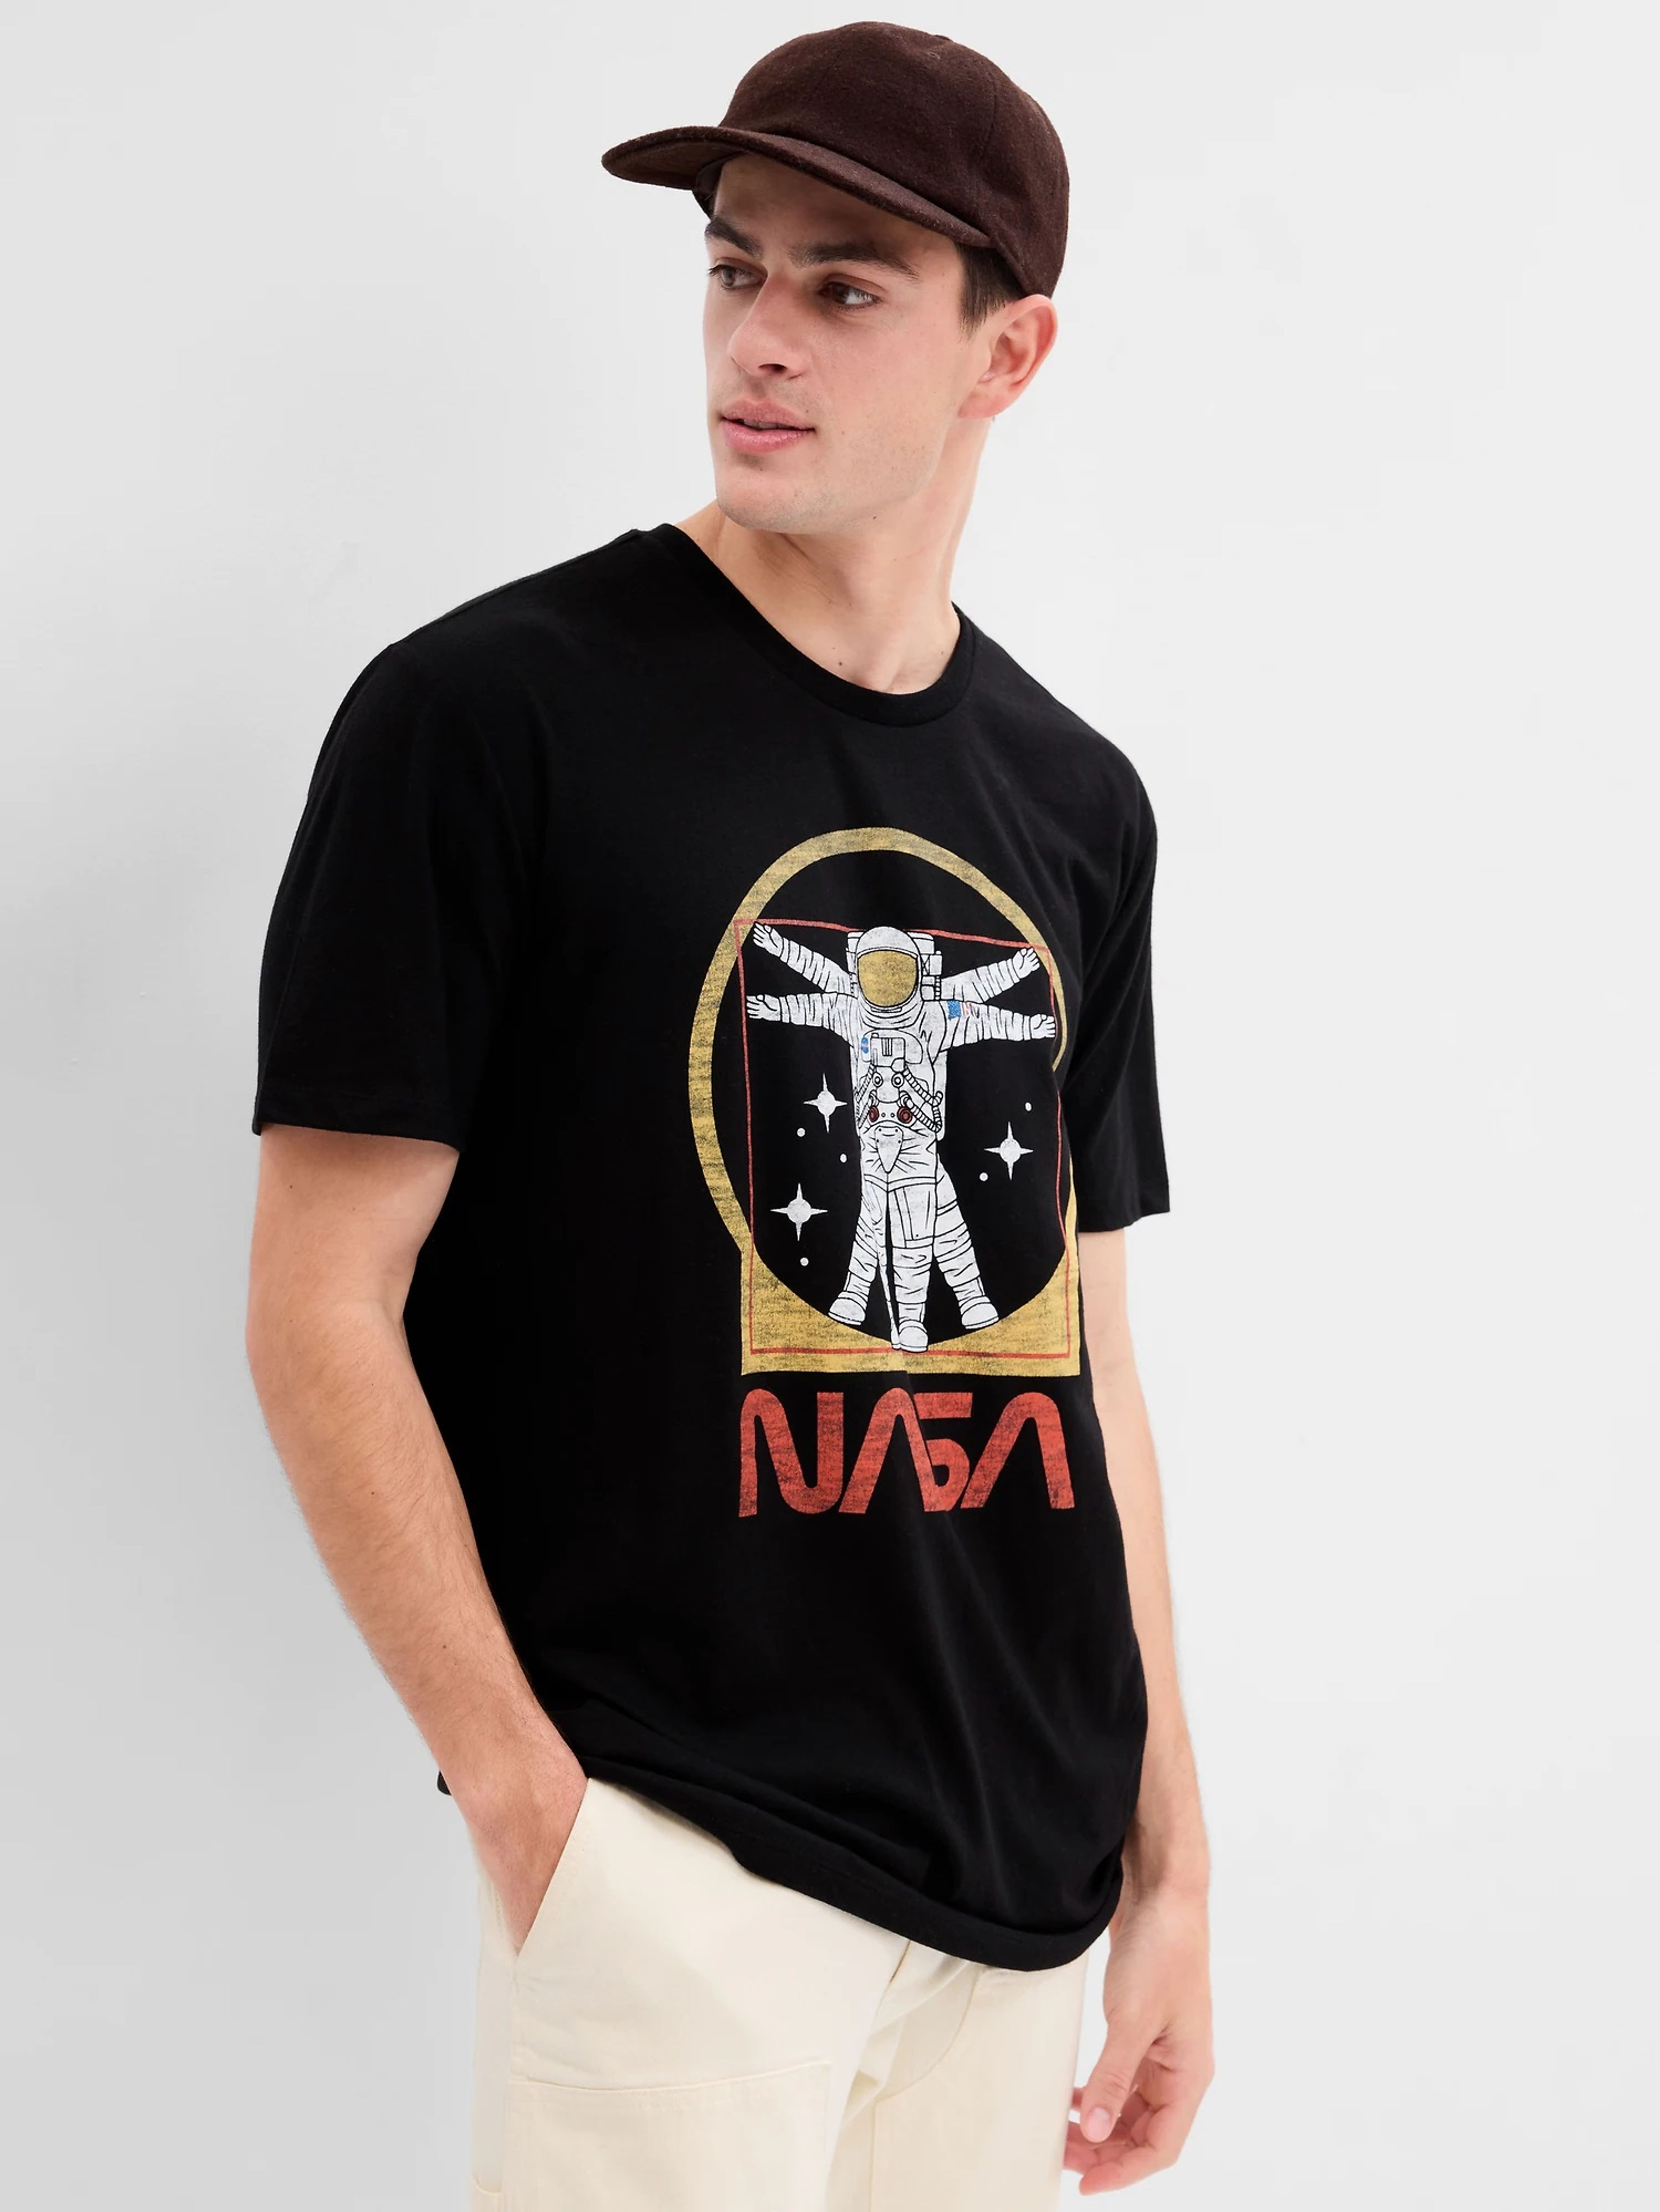 T-Shirt GAP & NASA